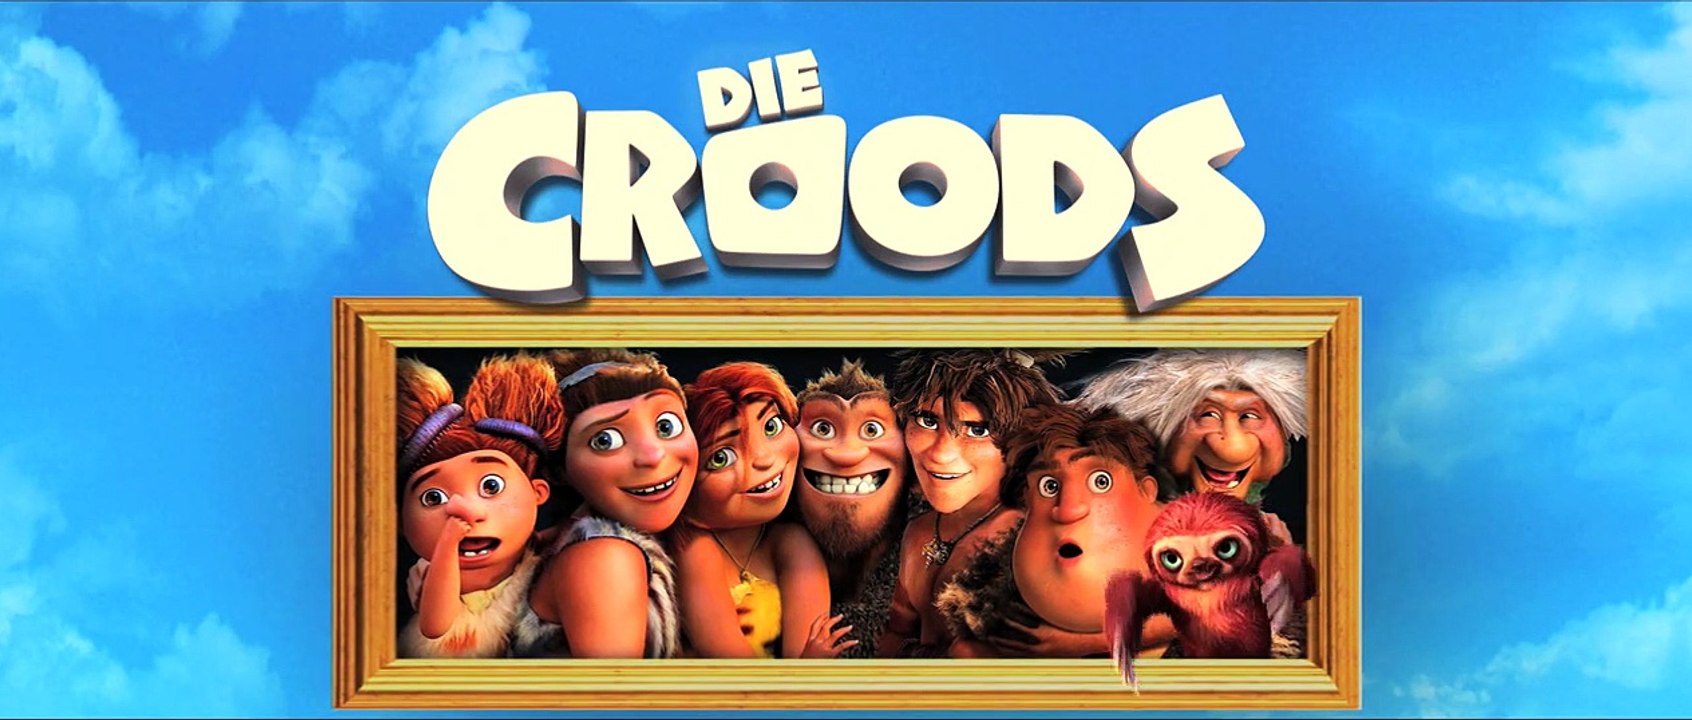 Die Croods Videoclip DF